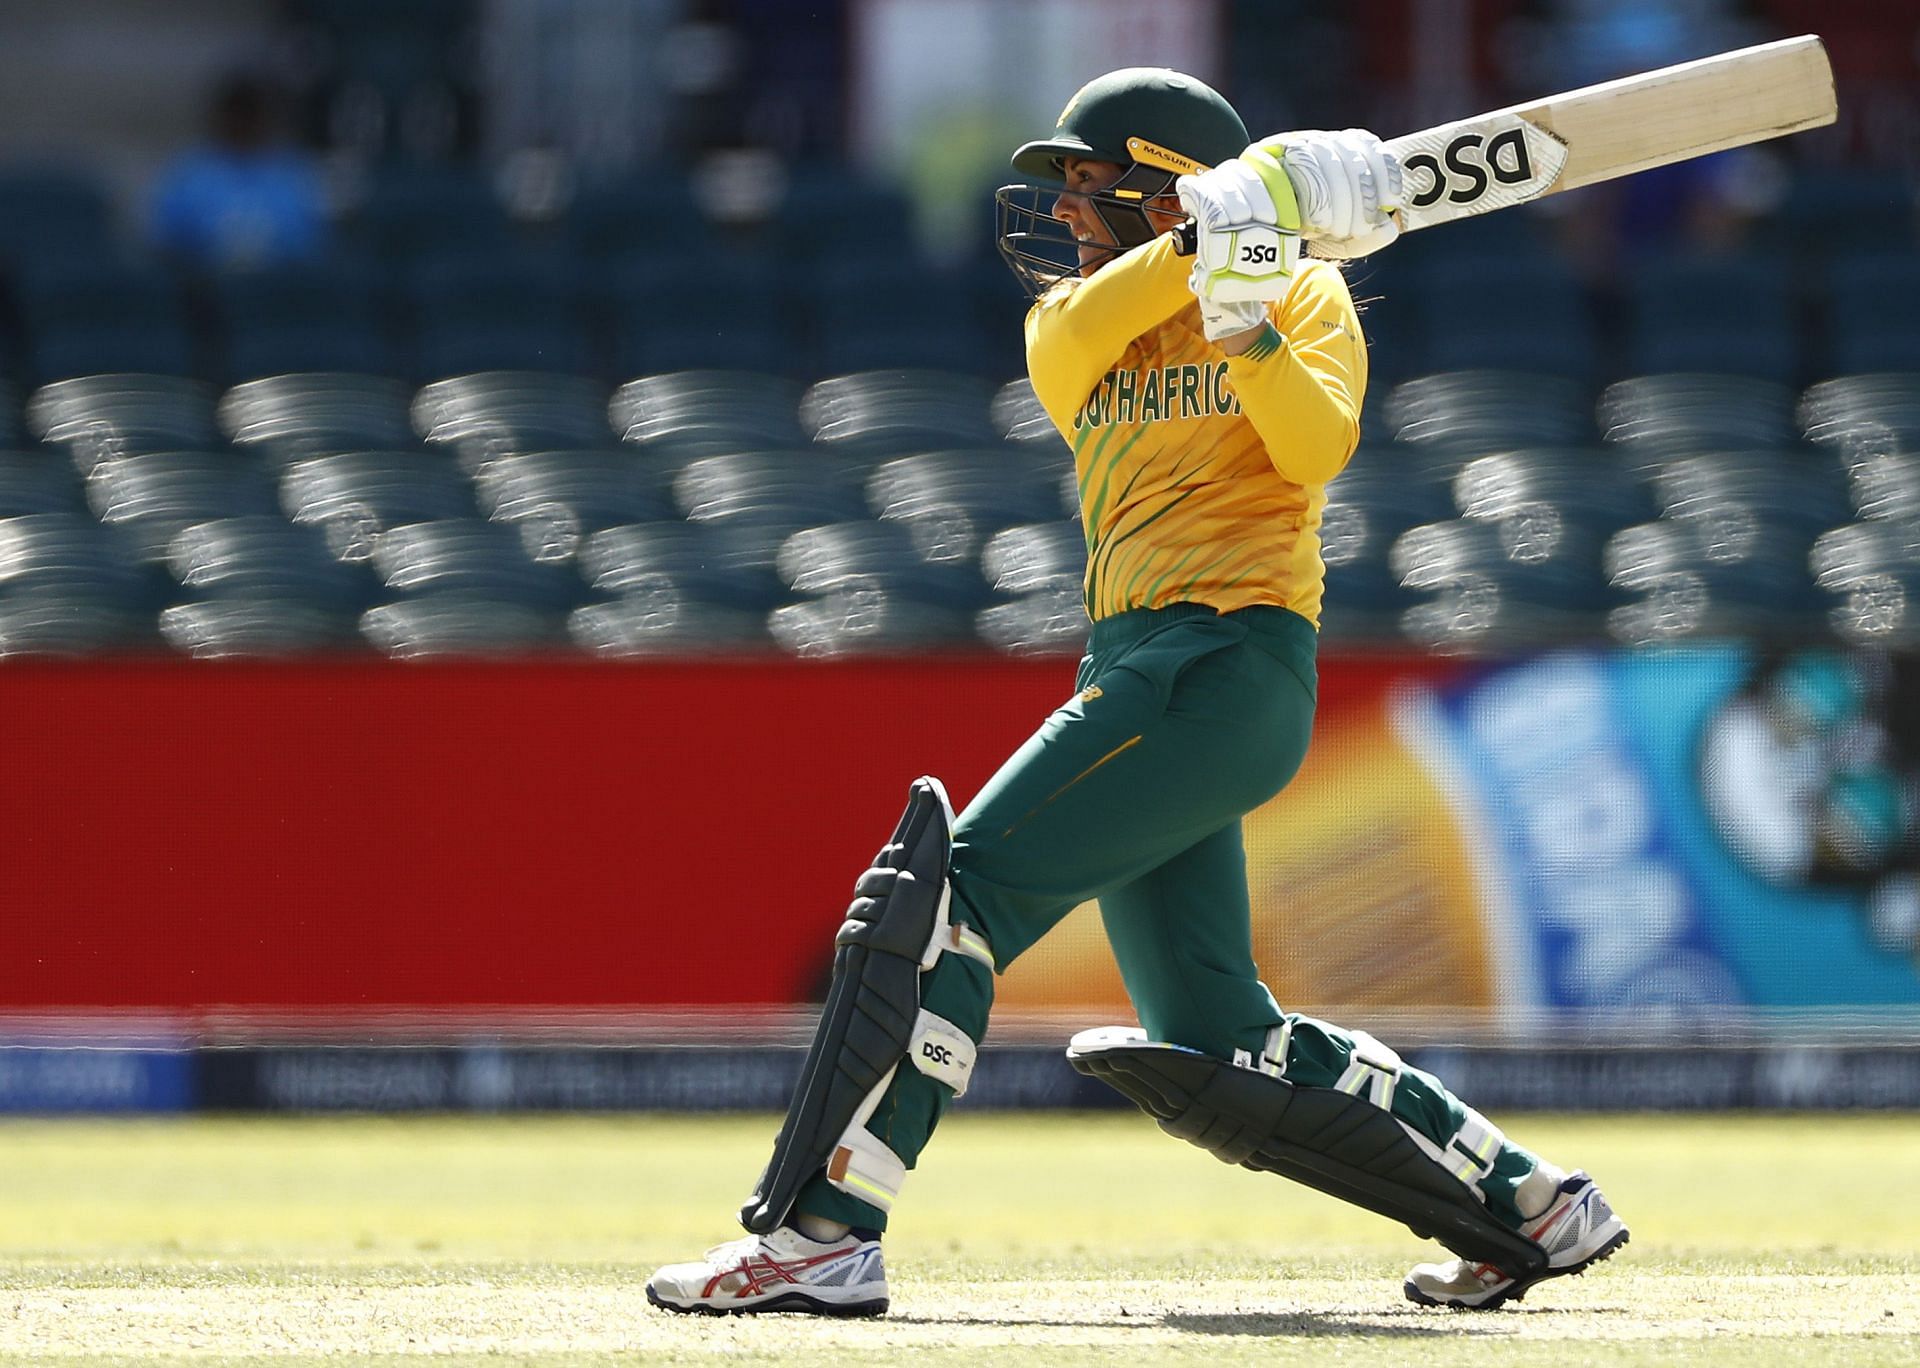 वेस्टइंडीज और दक्षिण अफ्रीका के बीच चार मैचों की वनडे सीरीज खेली जायेगी